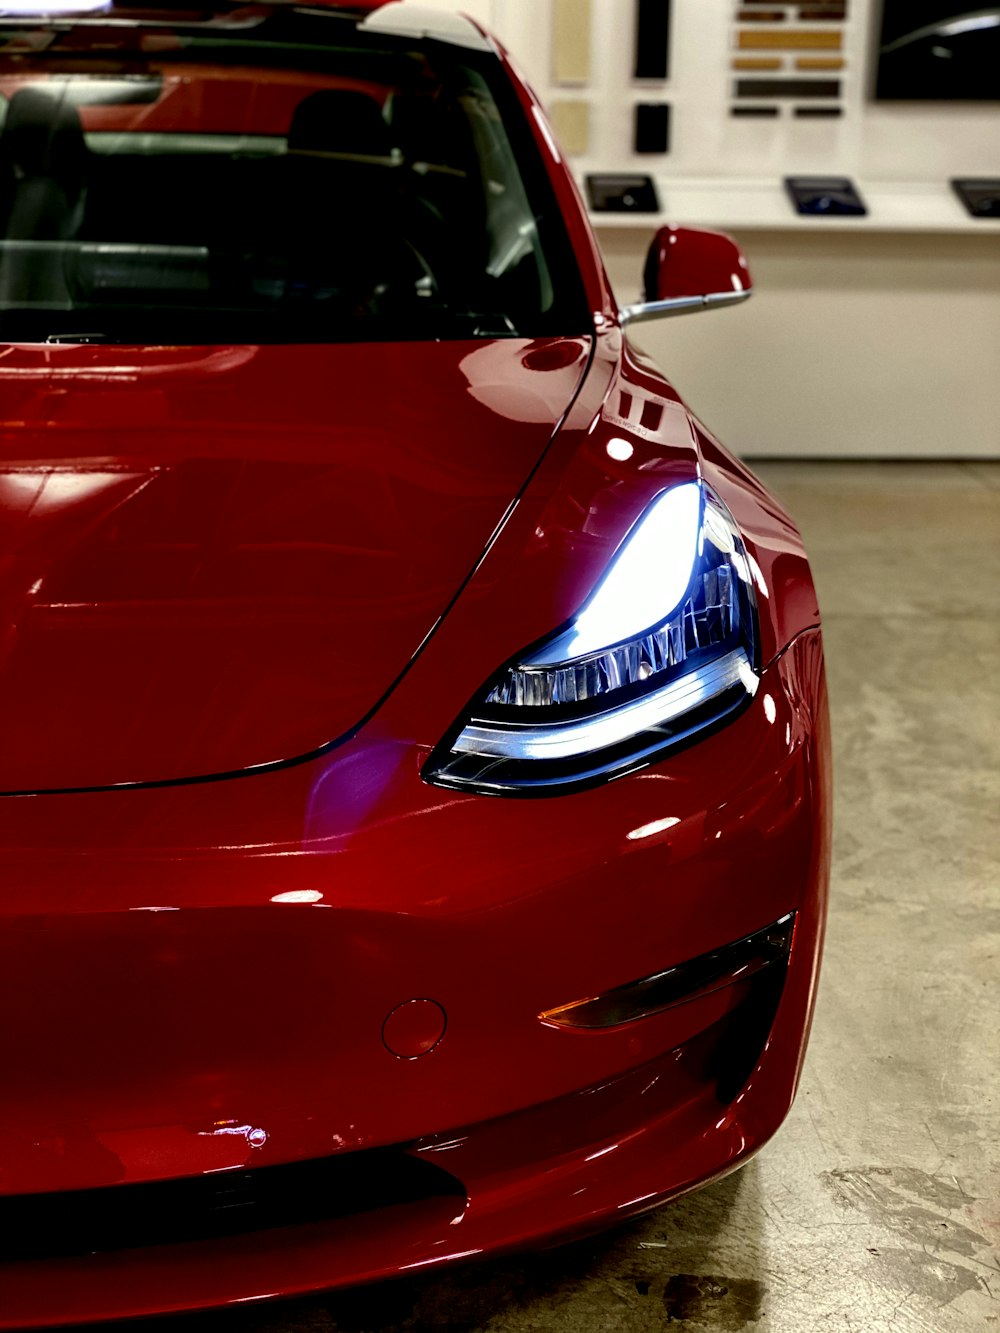 Tesla Model 3 Pictures | Download Free Images on Unsplash